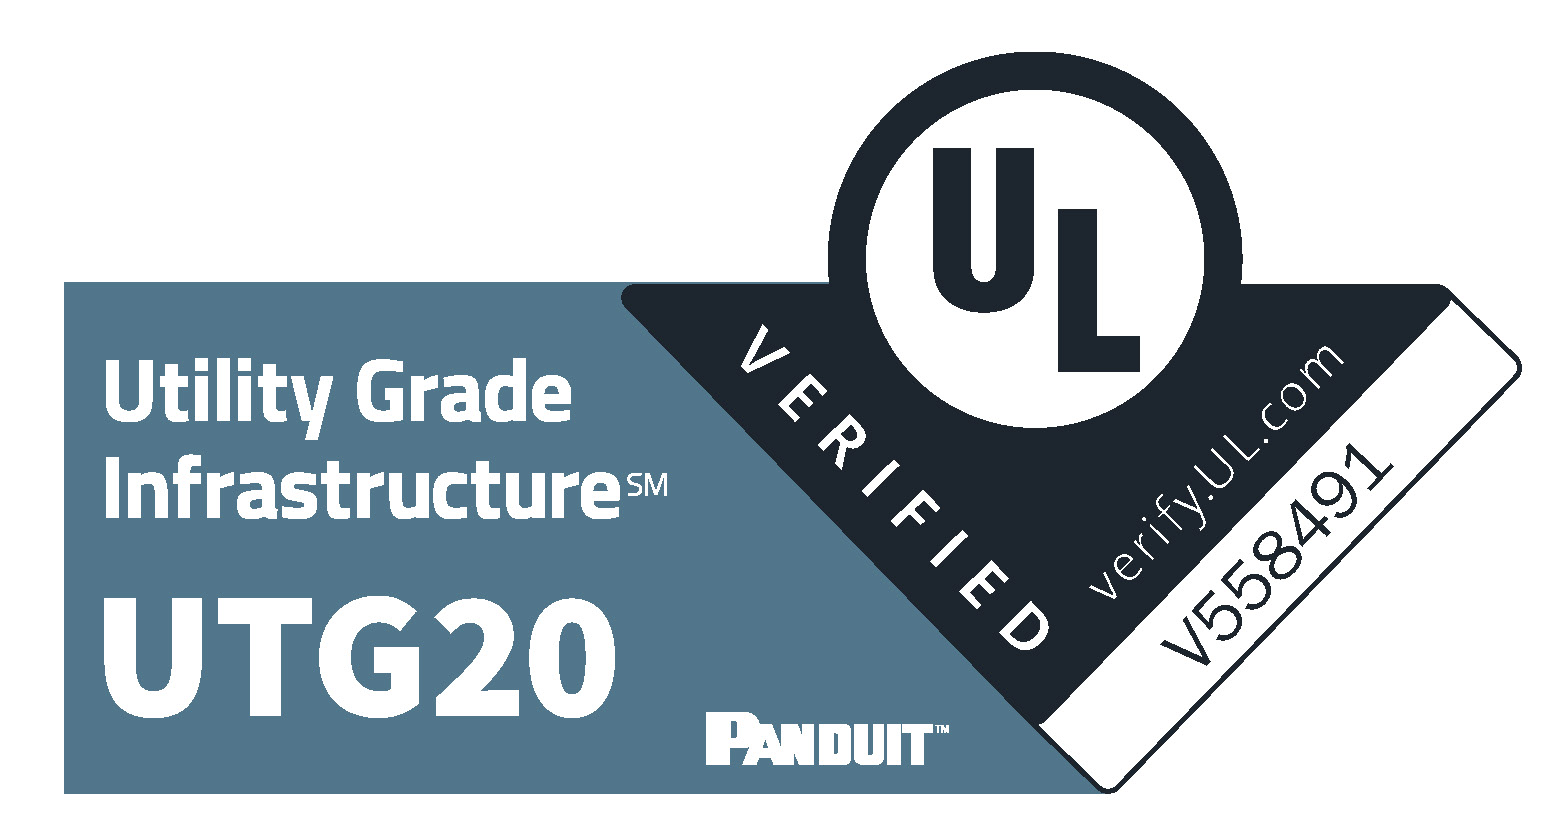 UL-Verified Marks-UTG20-Panduit-v2.jpg